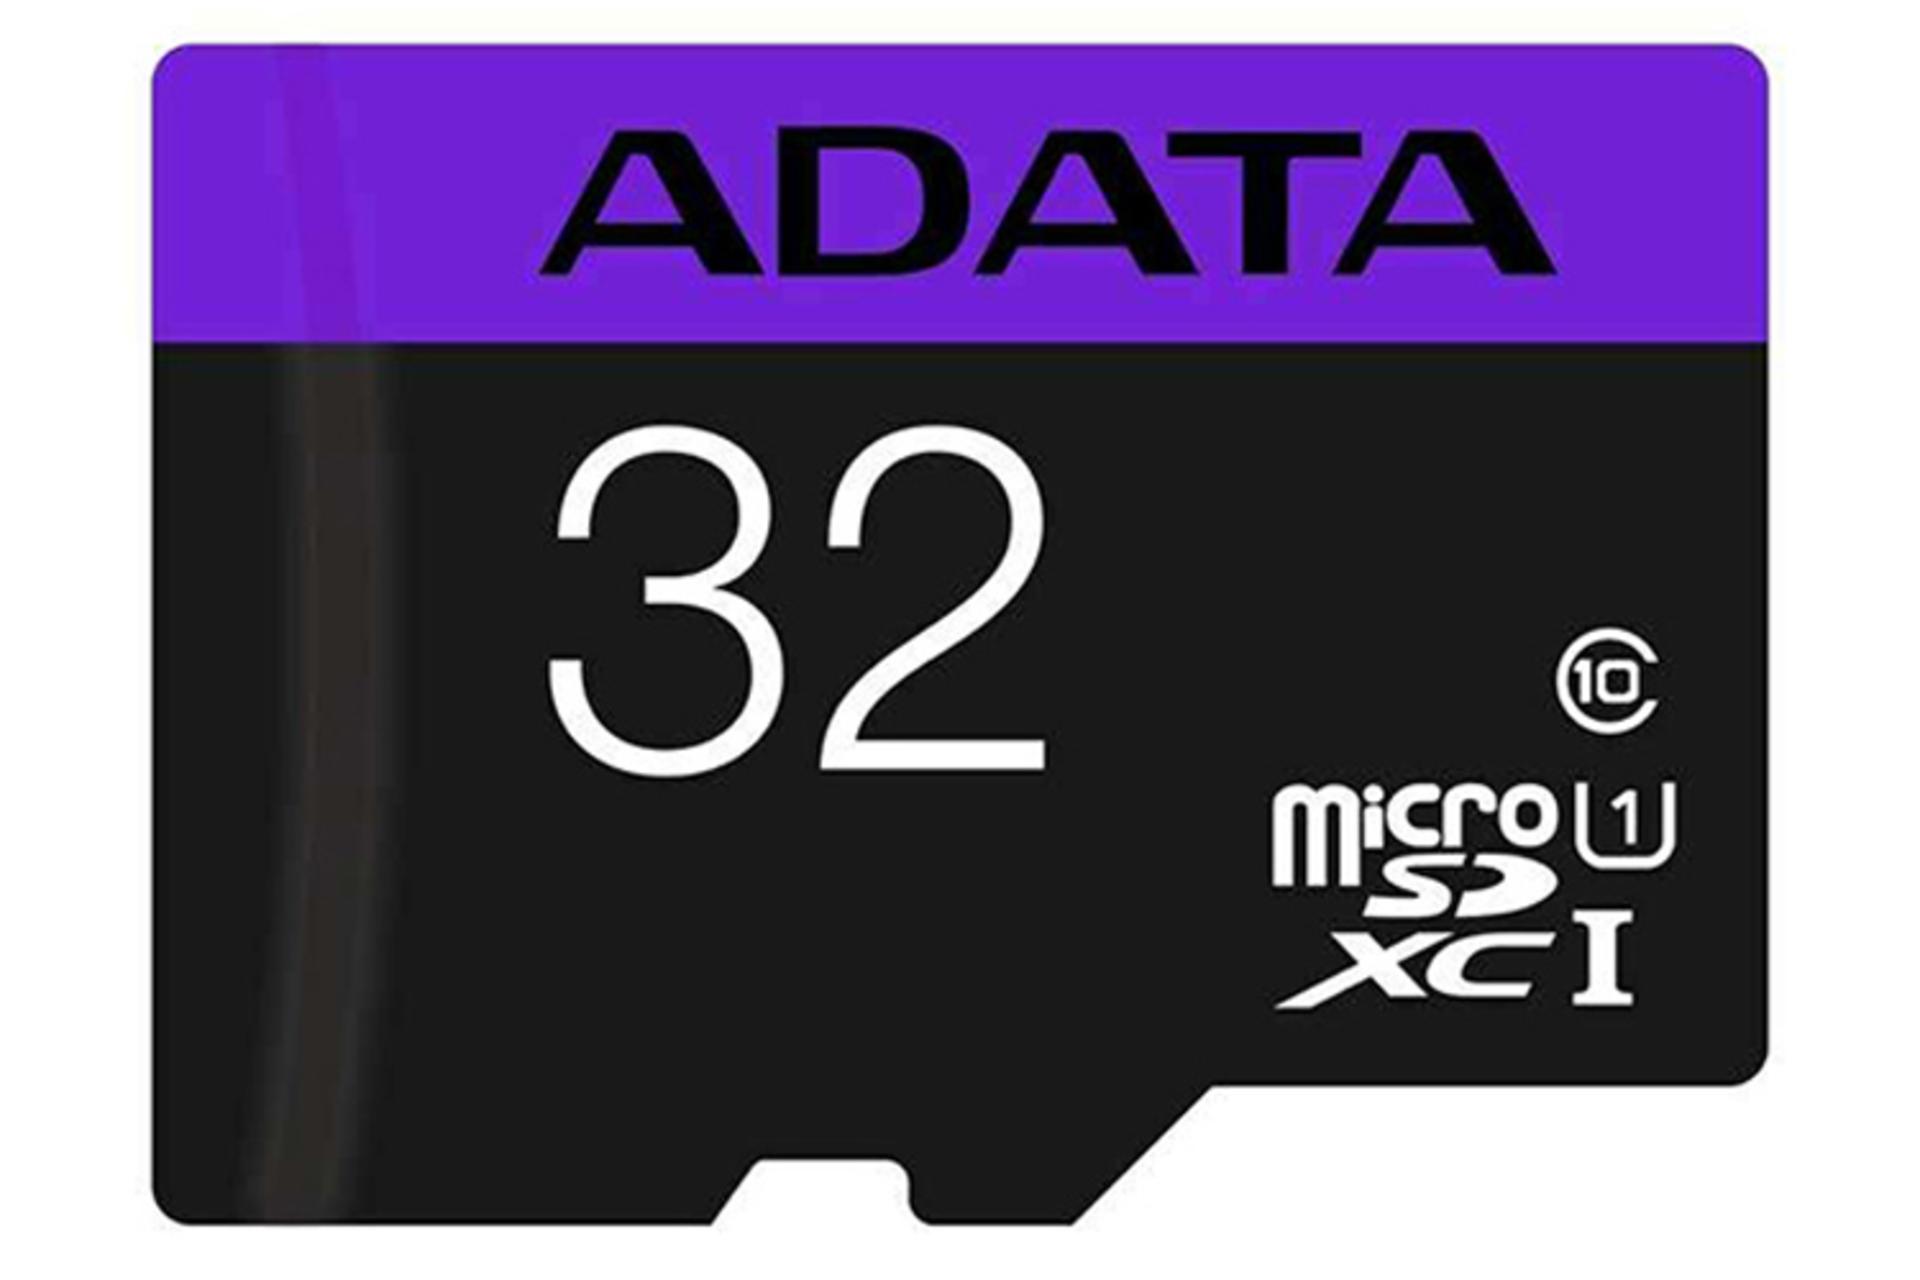 کارت حافظه ای دیتا microSDHC با ظرفیت 32 گیگابایت مدل Premier کلاس 10 با سرعت 80 مگابایت برثانیه